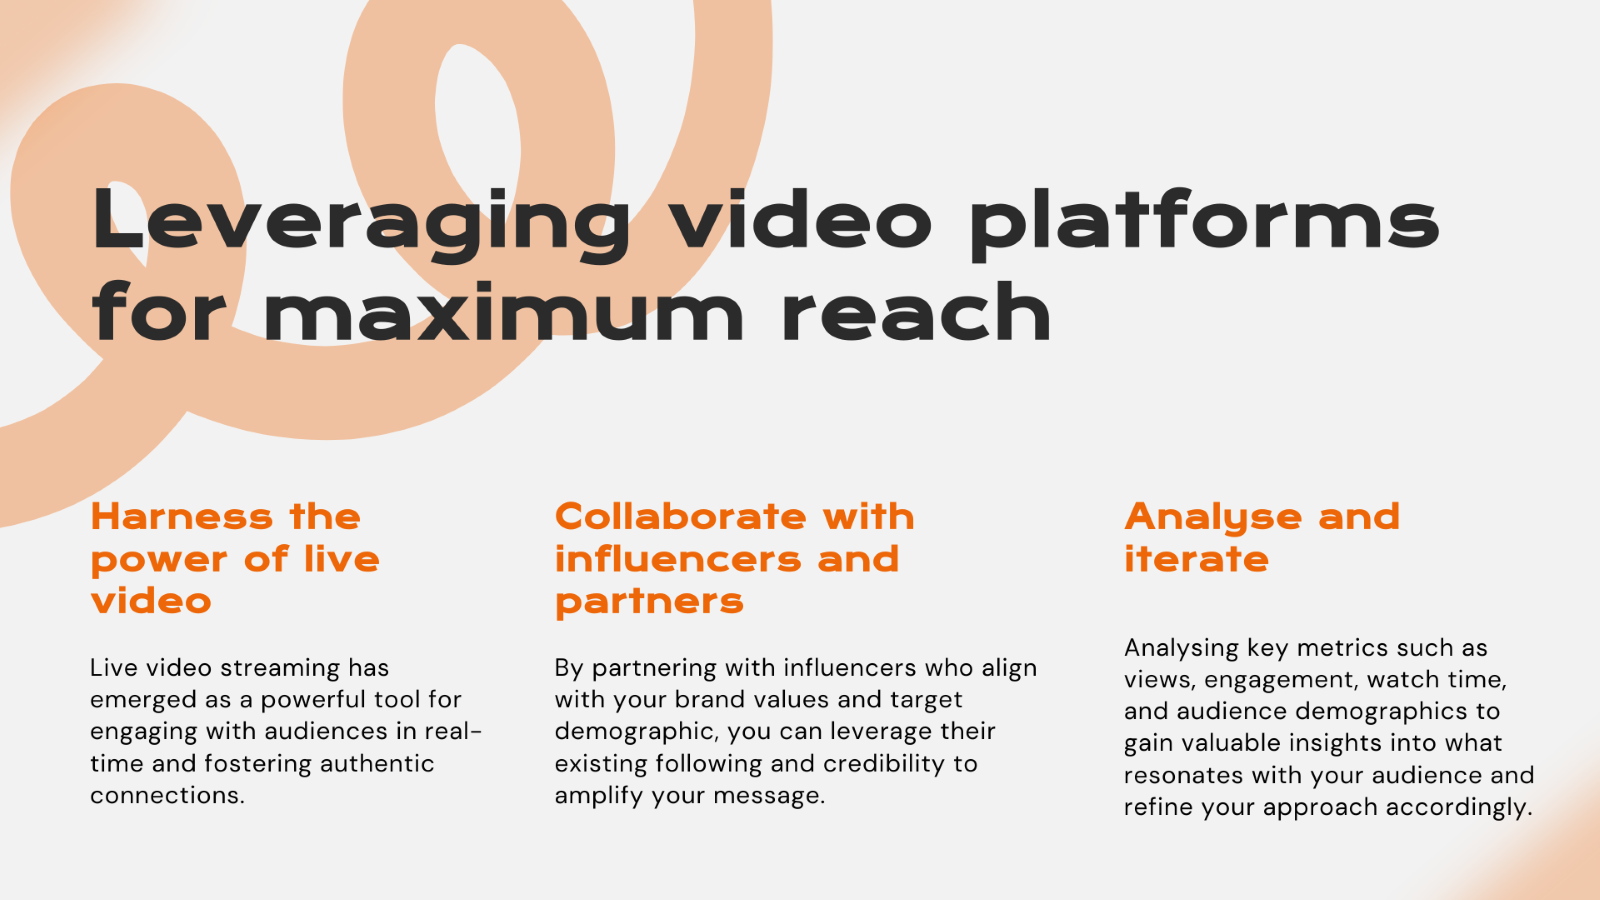 Leveraging video platforms for maximum reach